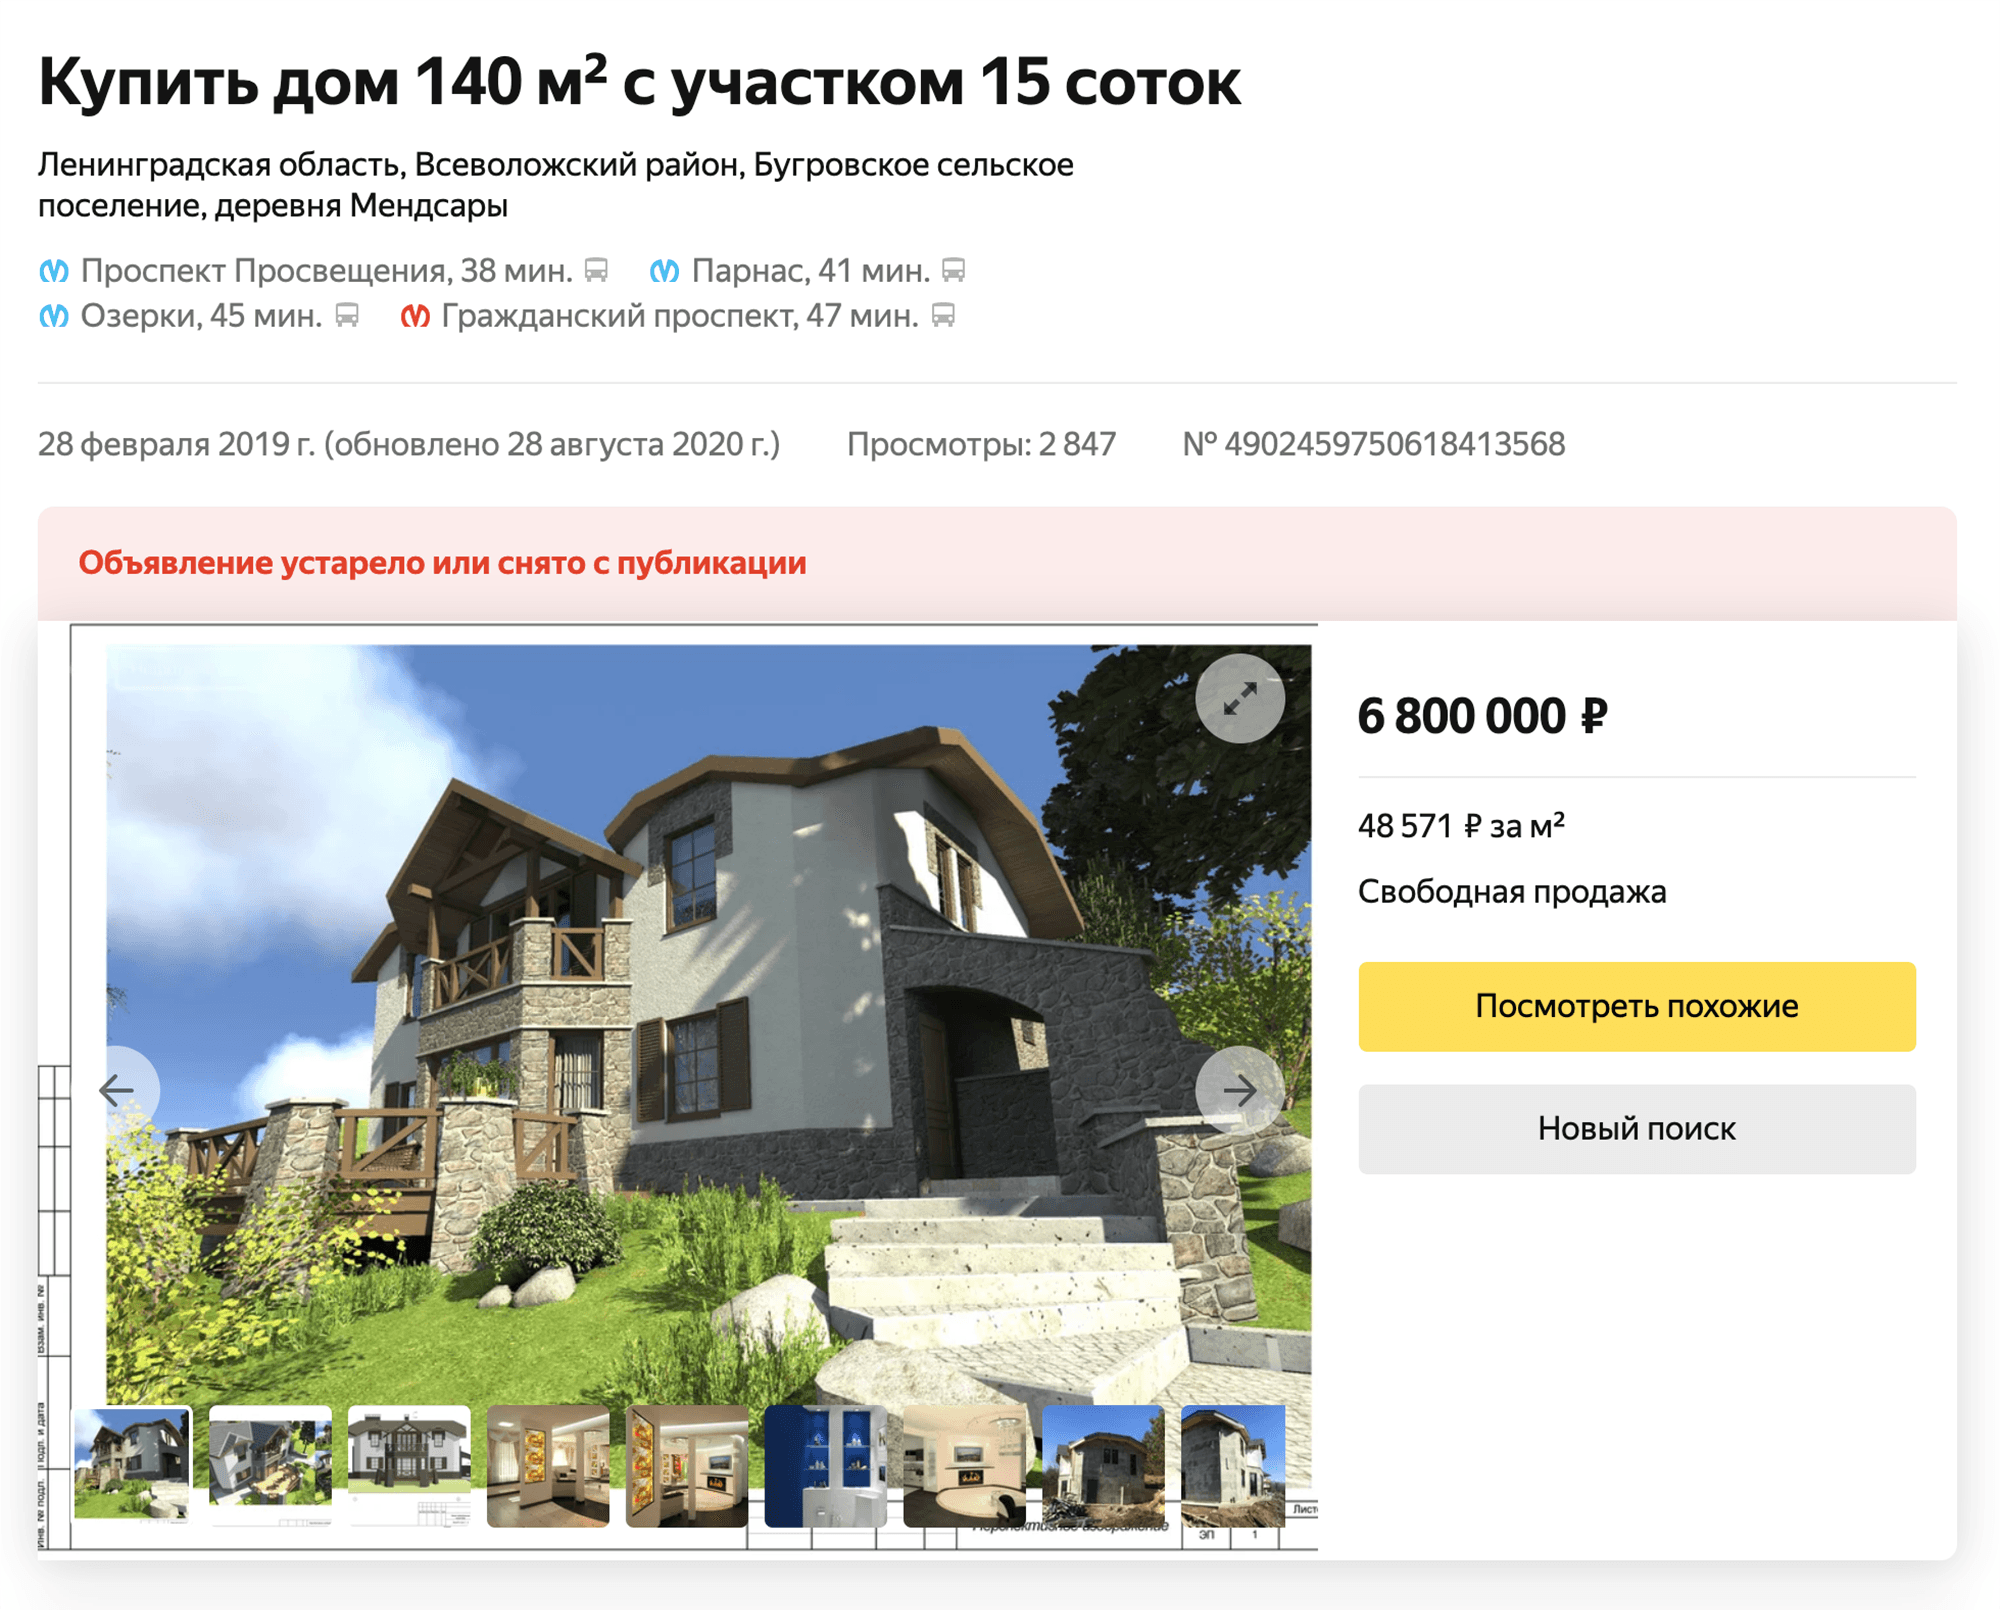 Мое объявление все еще можно посмотреть в архиве «Яндекс-недвижимости». В нем указано, что площадь участка — 15 соток. Основной мой участок земли меньше, но в дополнение к нему идет доля участка дороги, которая находится в нашей совместной собственности с соседом